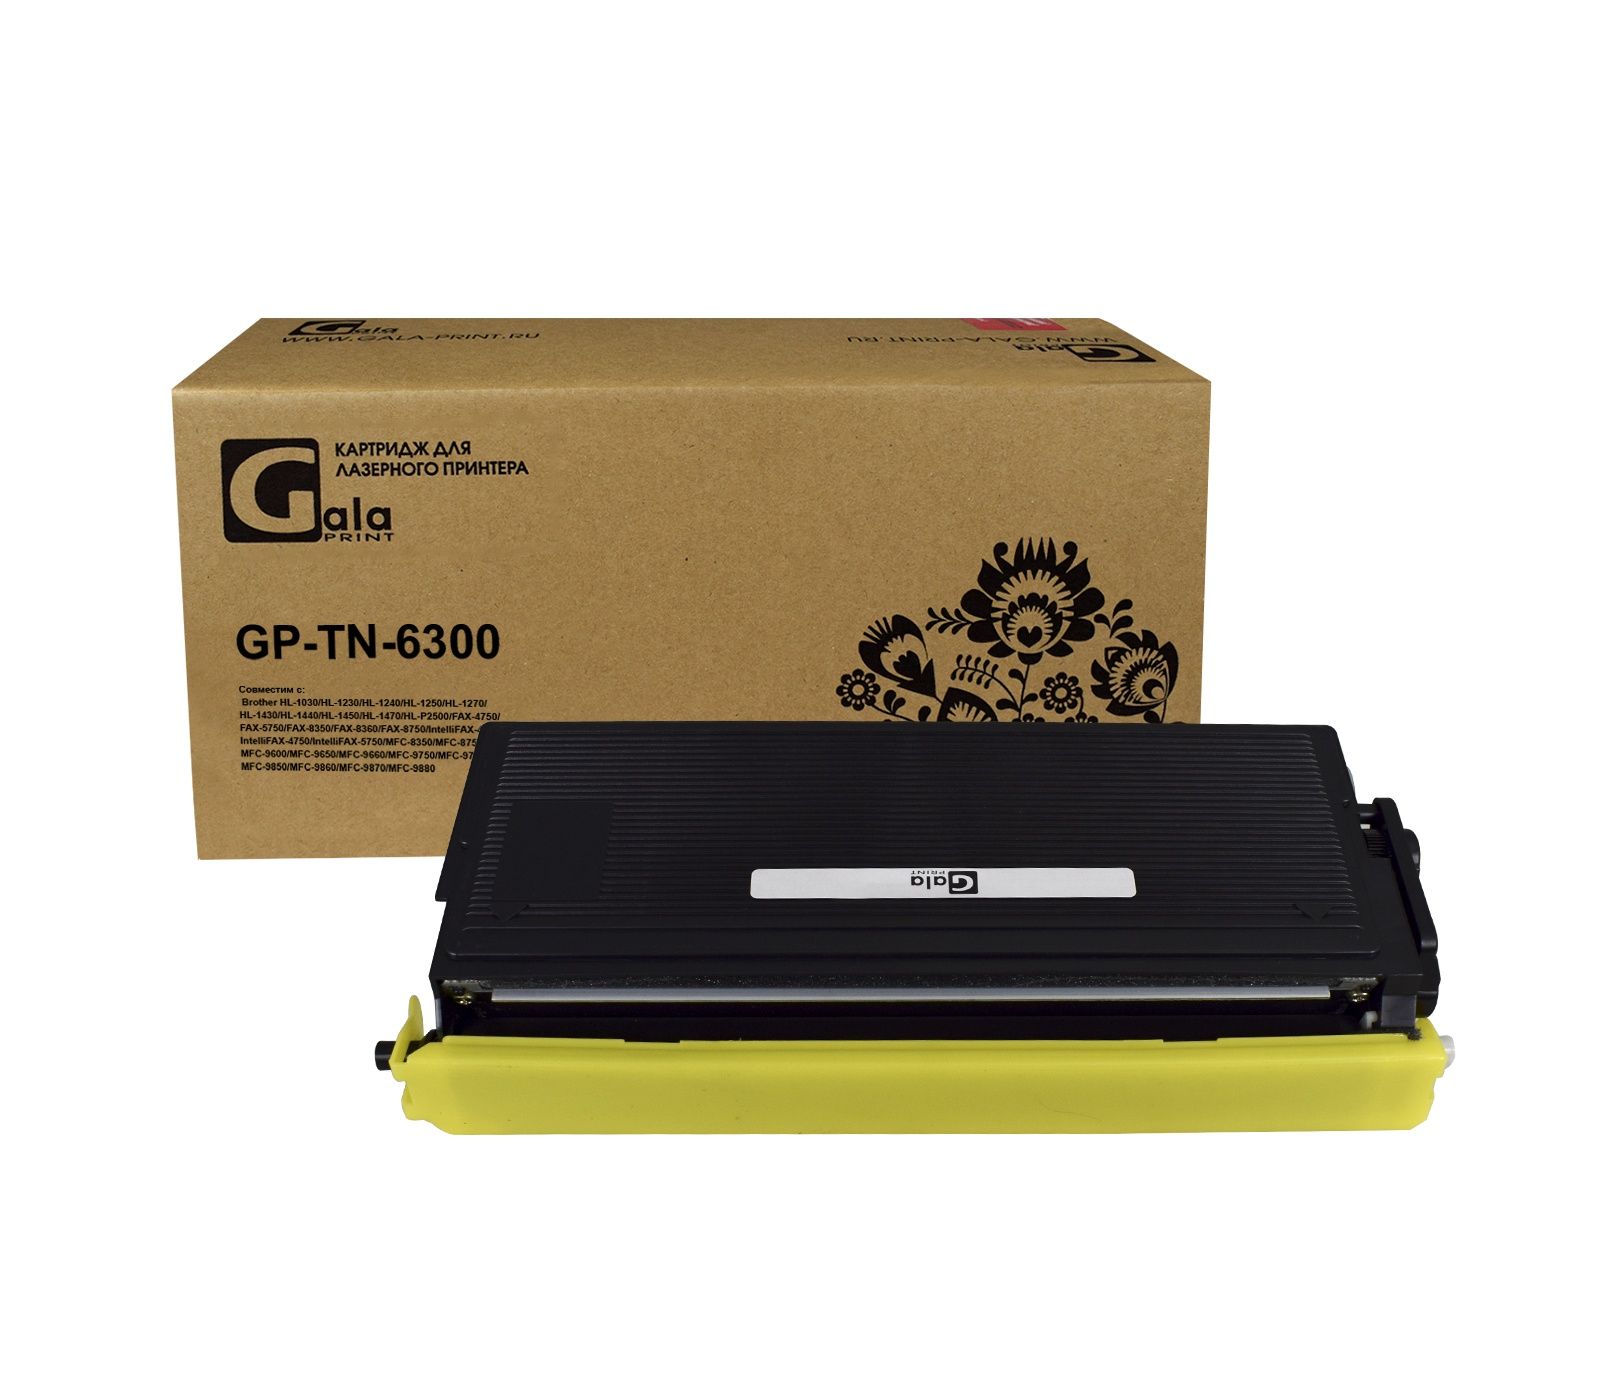 Картридж GP-TN-6300 для принтеров Brother 3000 копий GalaPrint